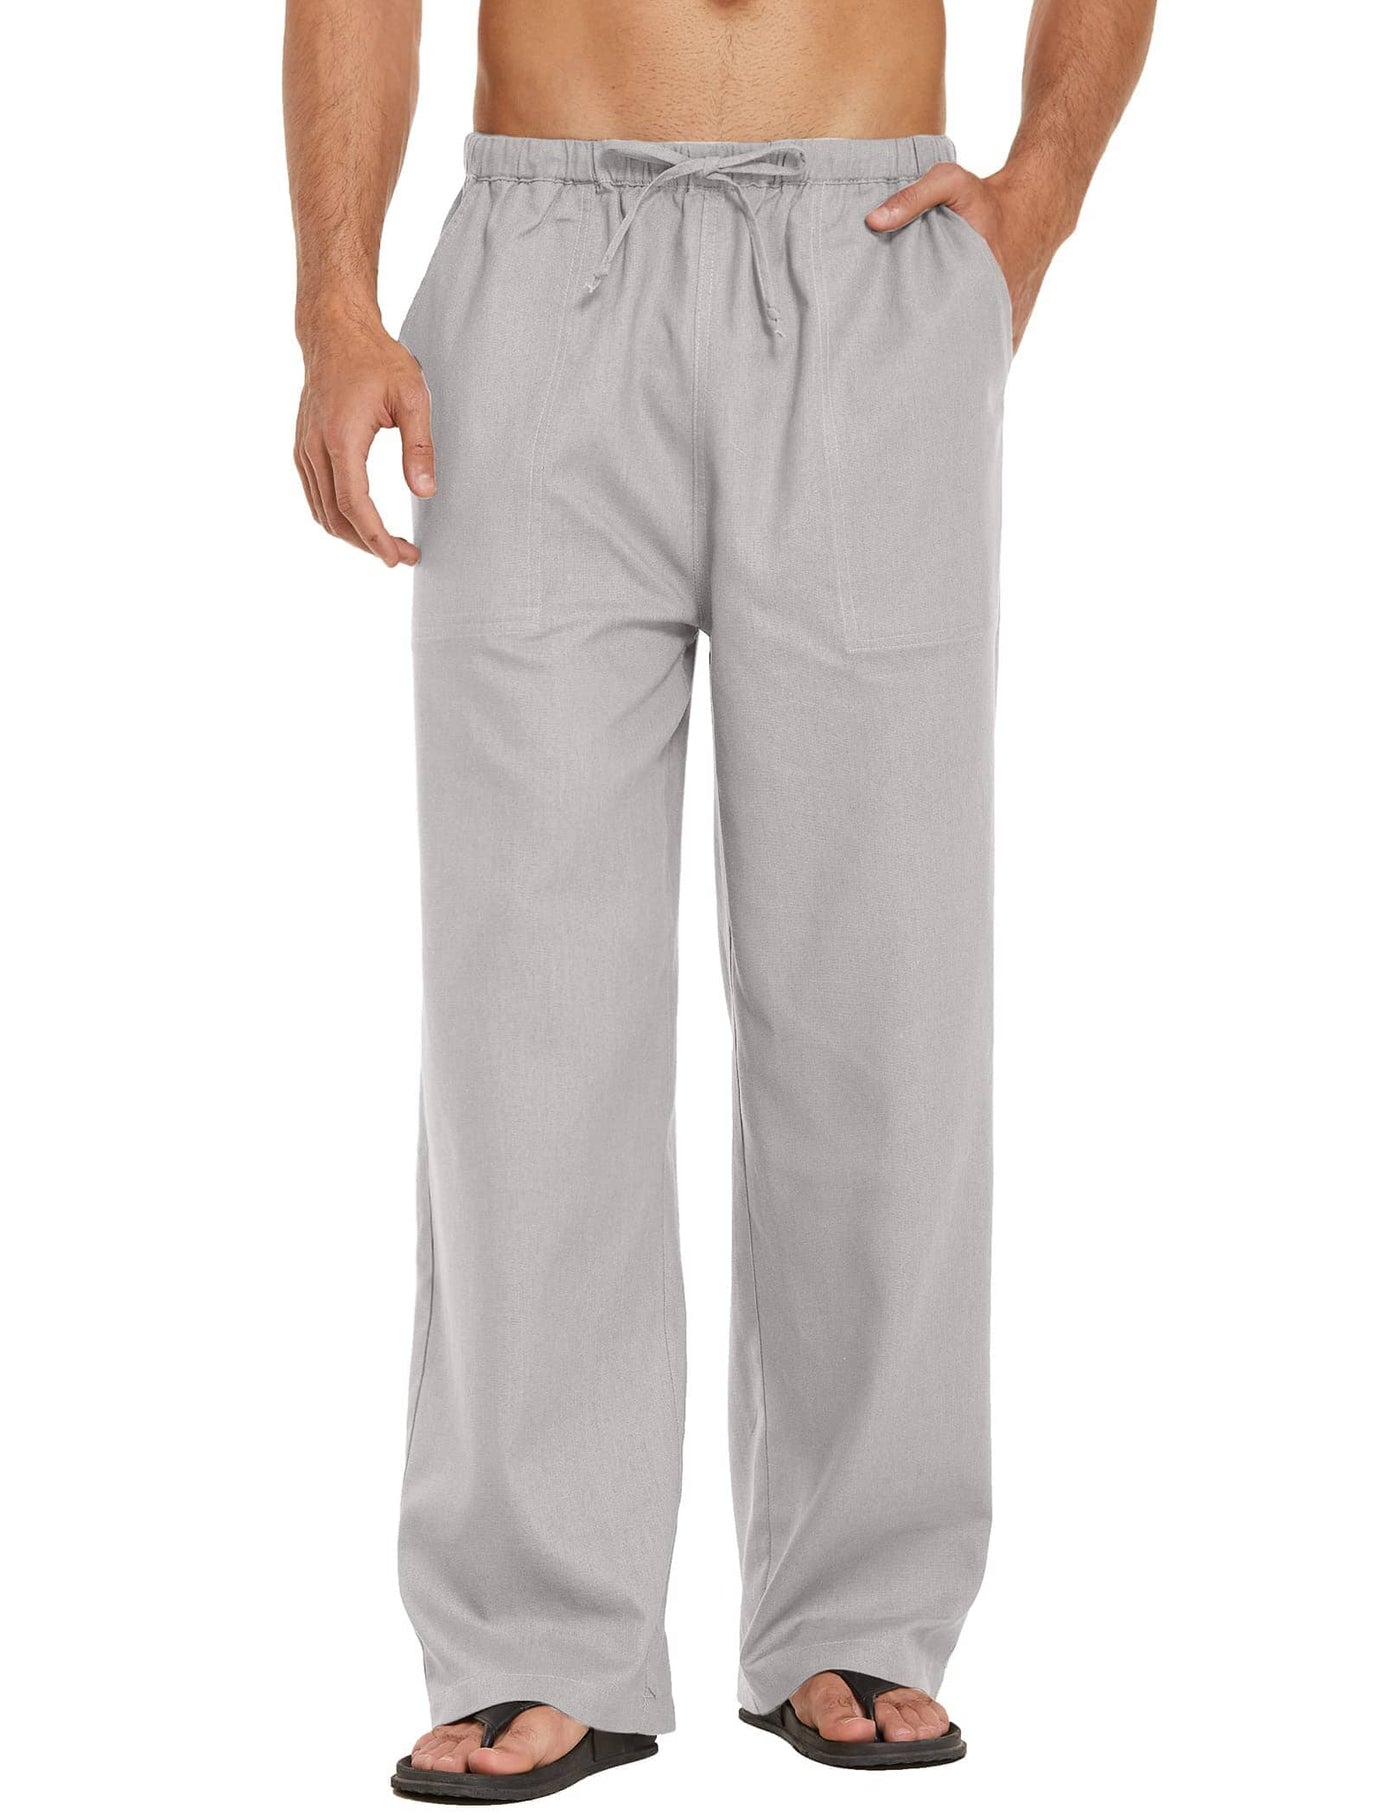 Coofandy Linen Style Elastic Waist Yoga Pants (US Only) Pants coofandy Grey S 